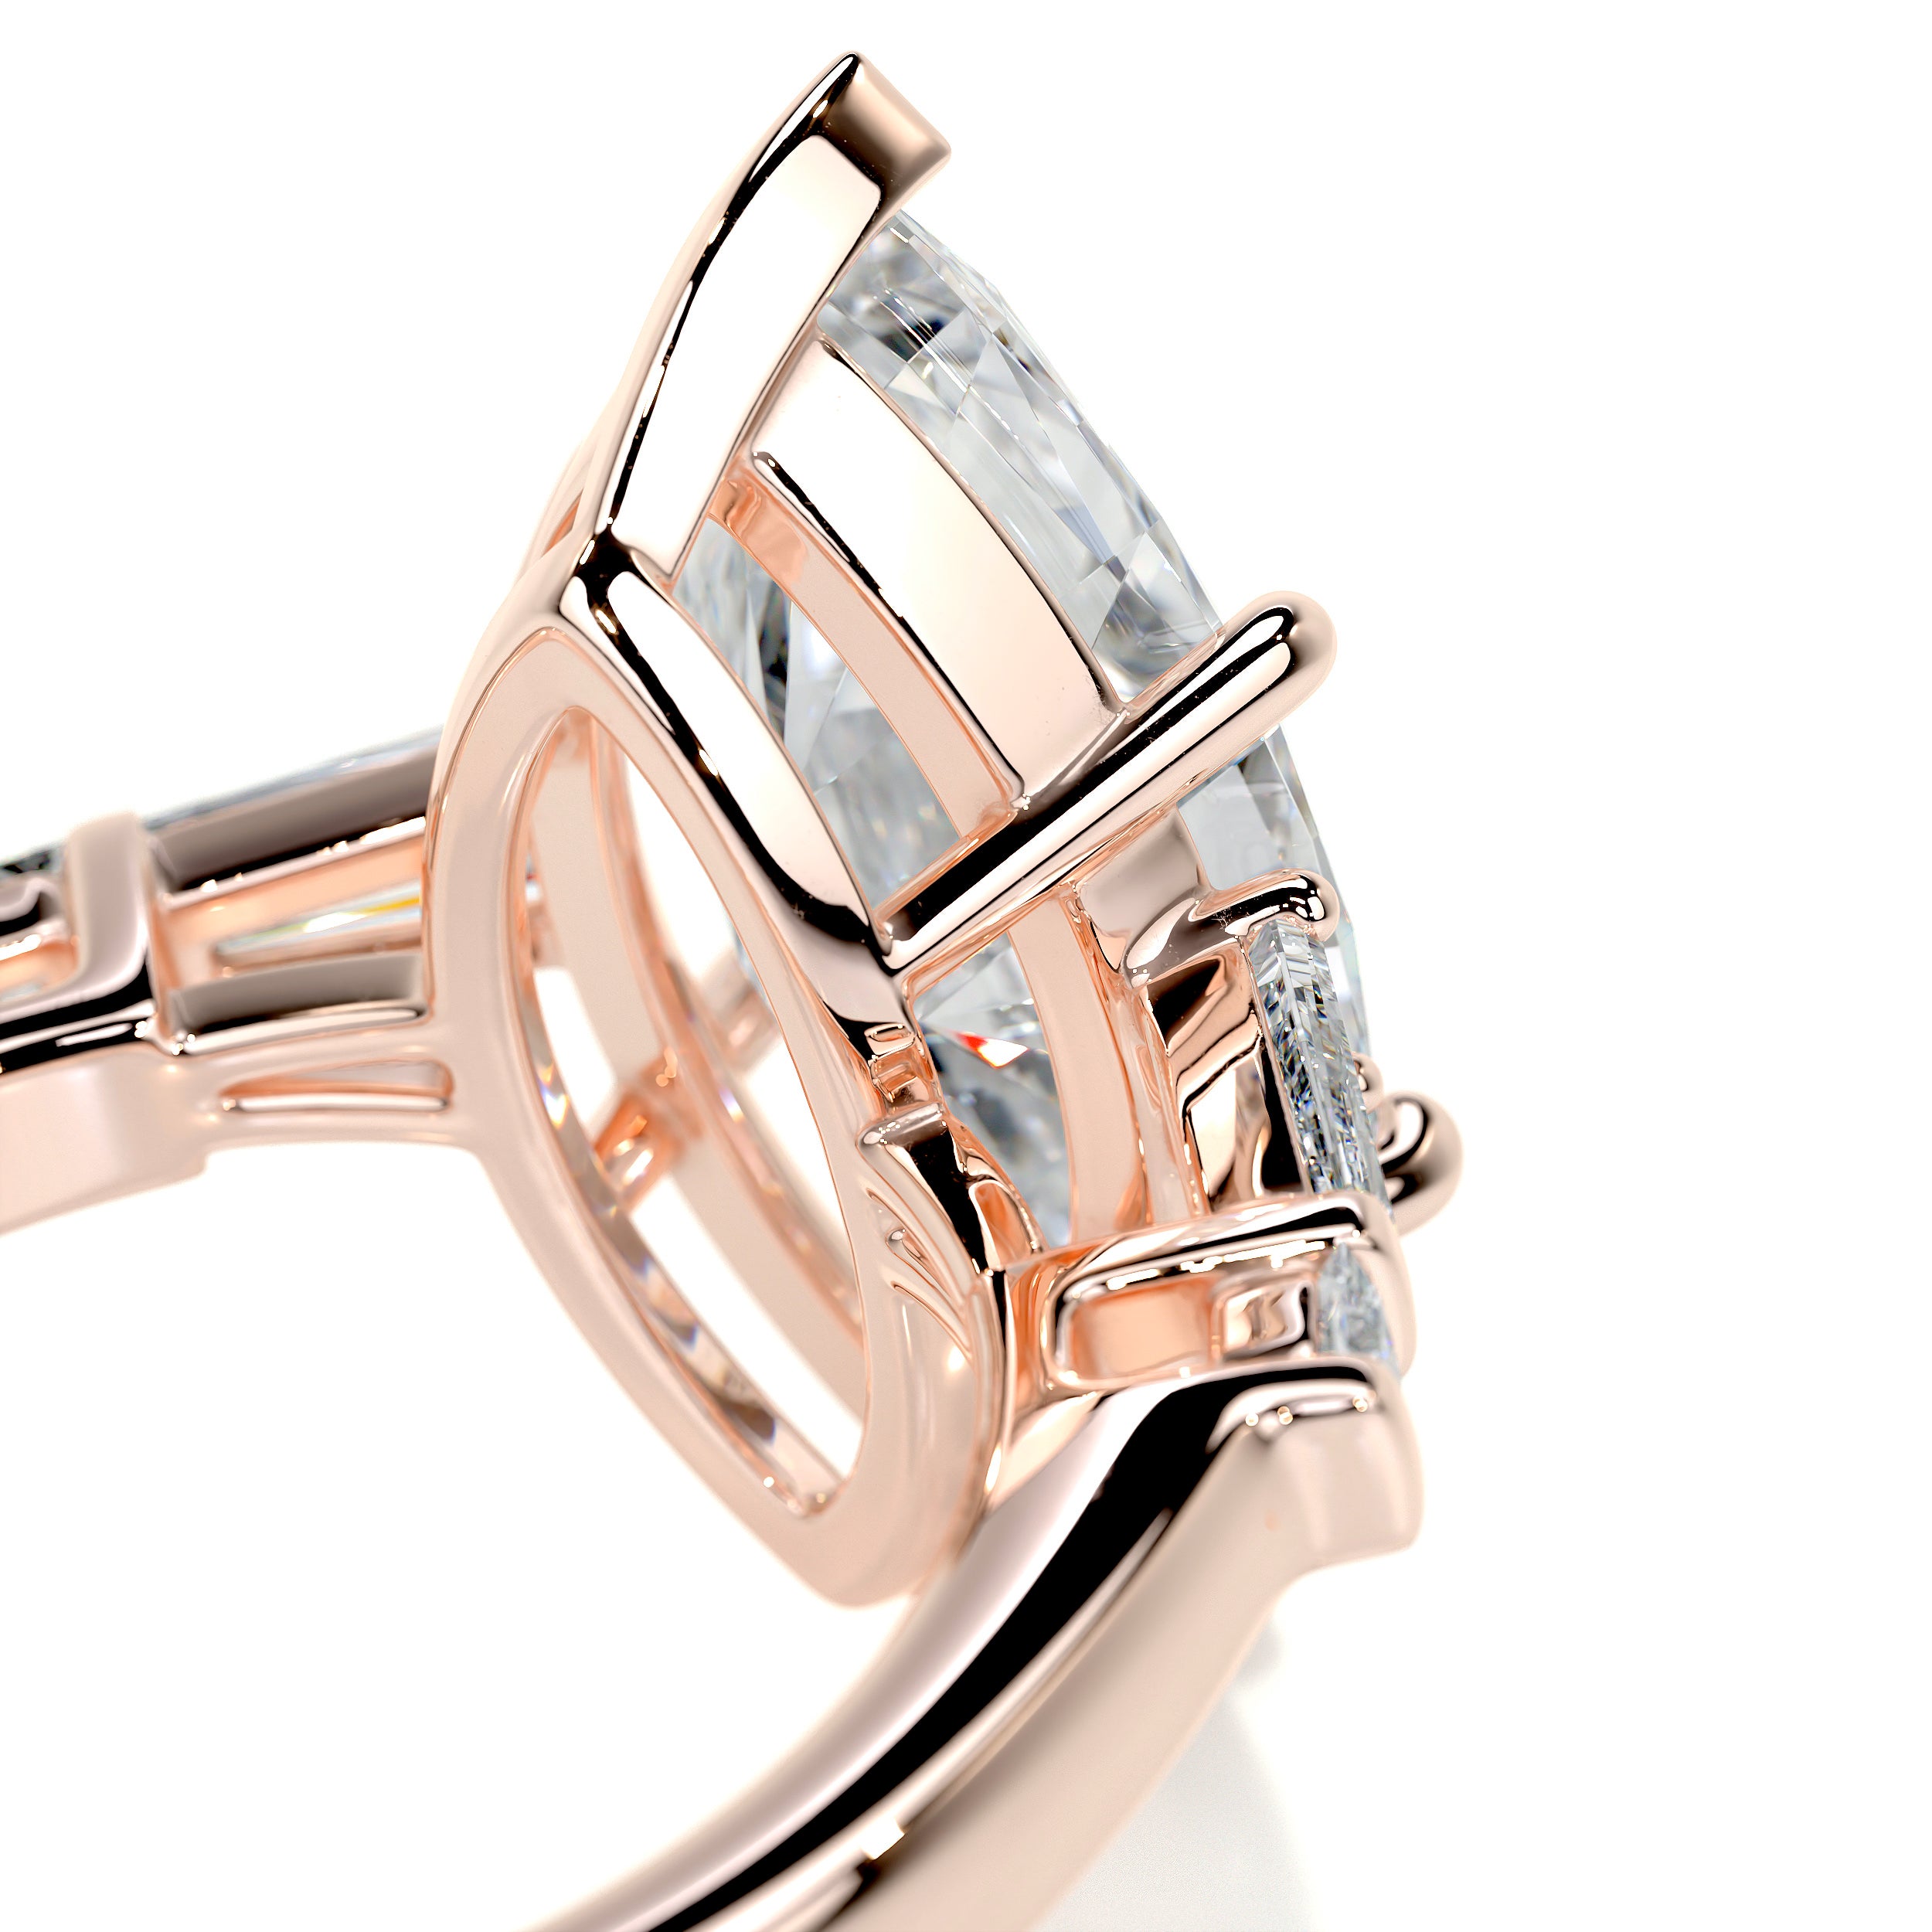 Tessa Diamond Engagement Ring   (5.3 Carat) -14K Rose Gold